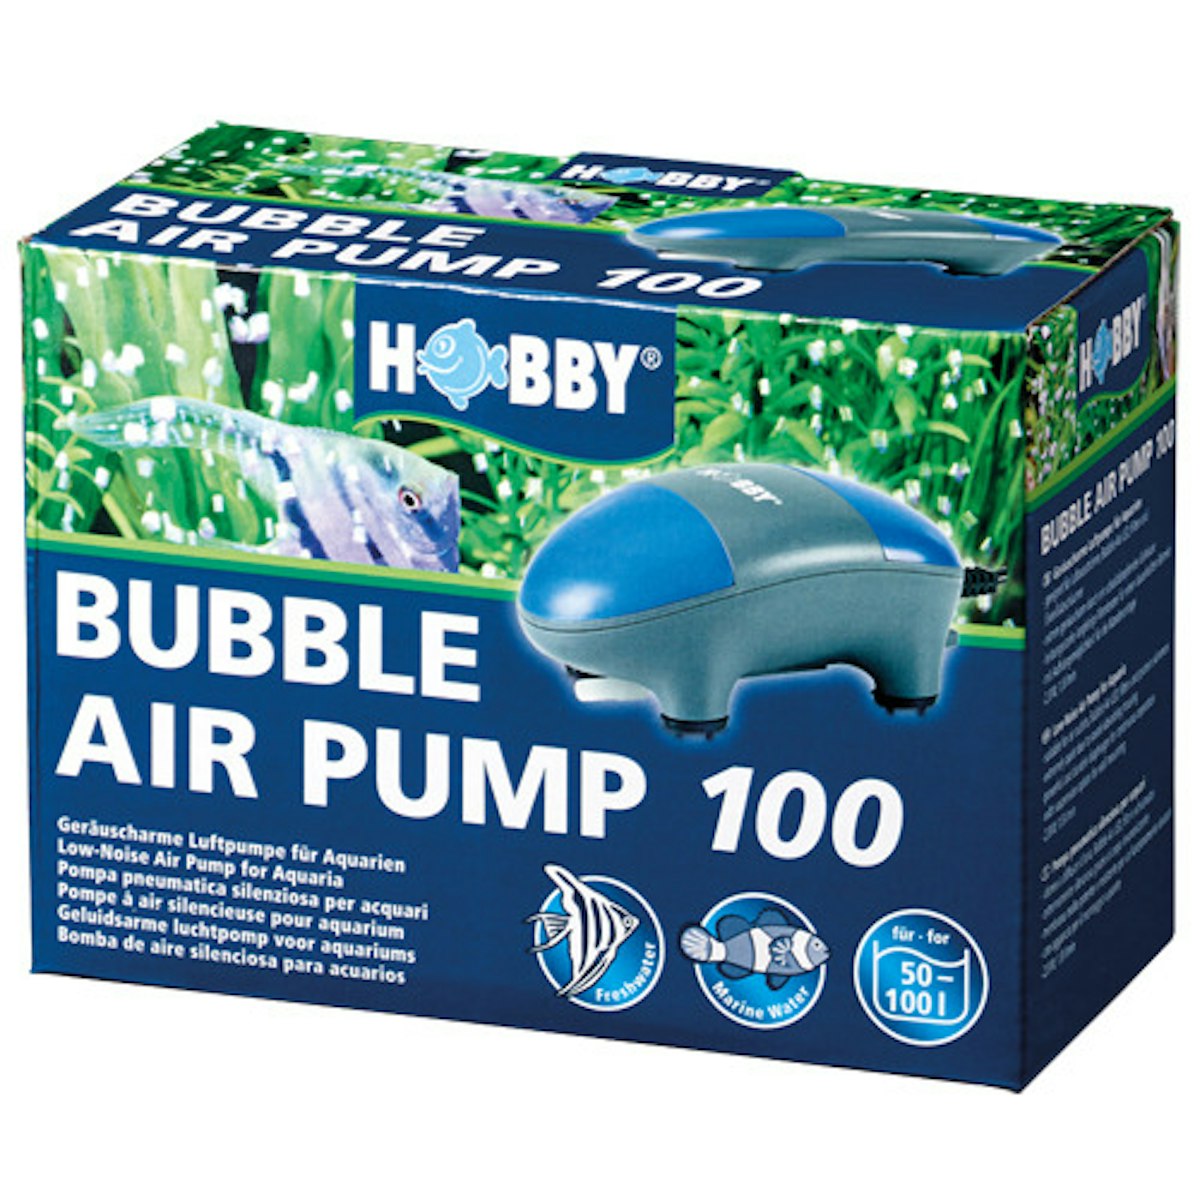 HOBBY Bubble Air Pump Aquarienbeleuchtung von HOBBY